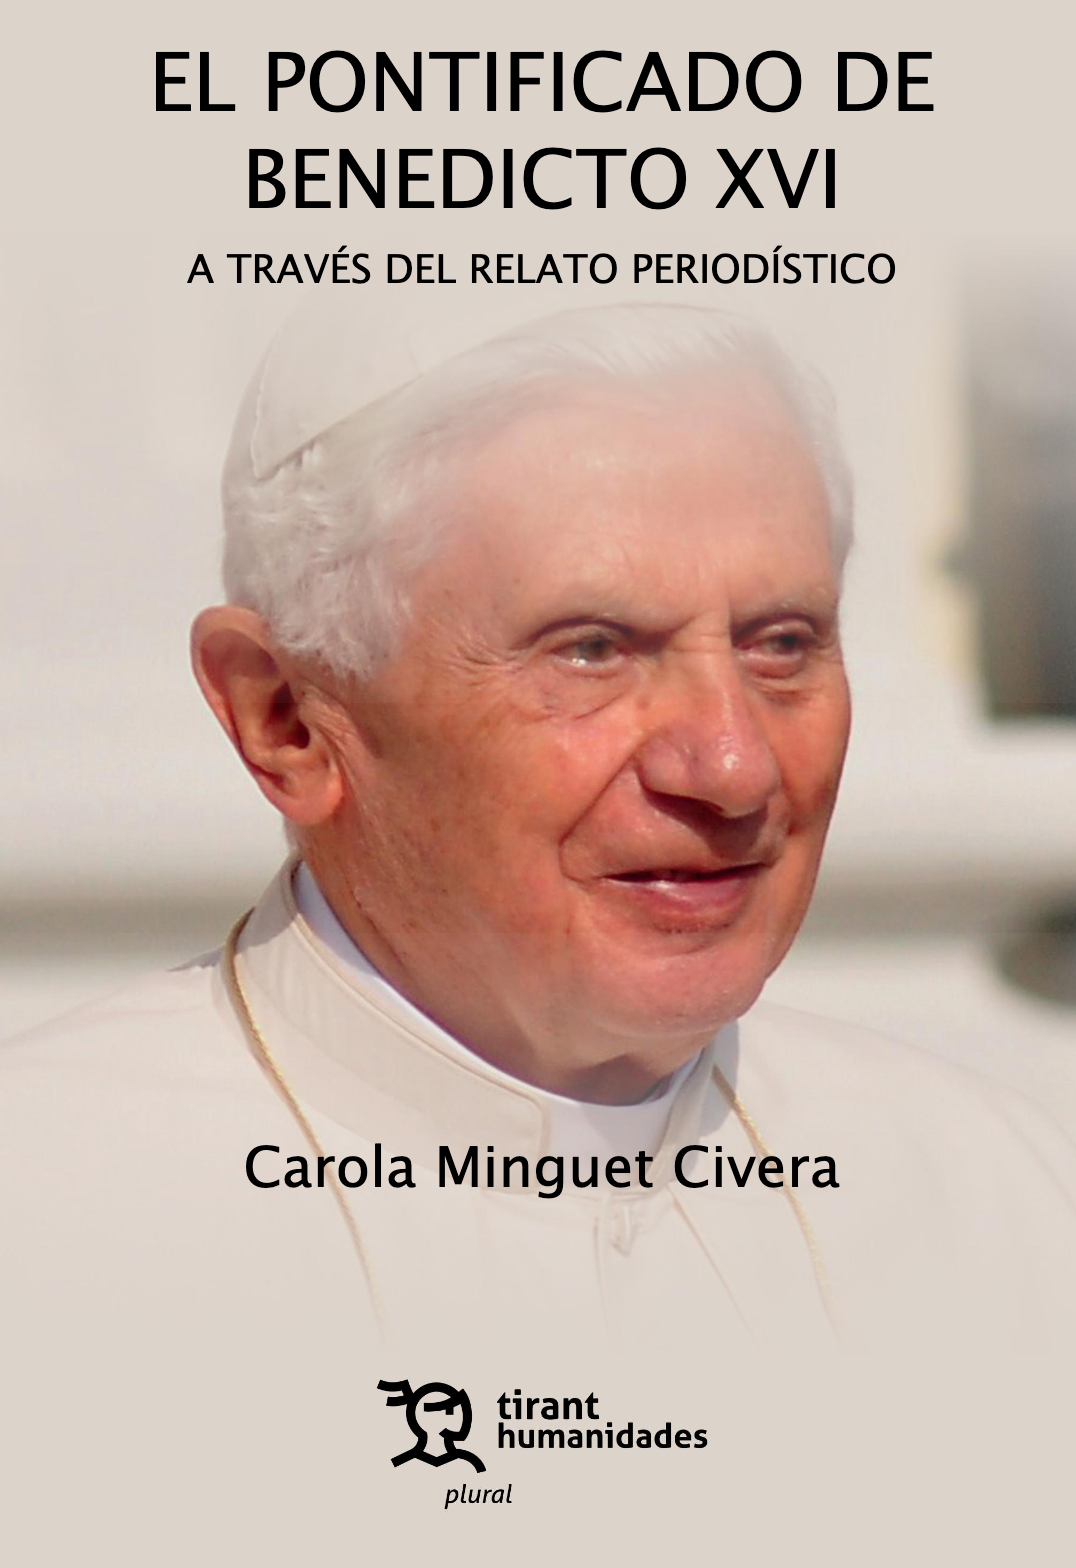 El pontificado de Benedicto XVI a través del relato periodístico.